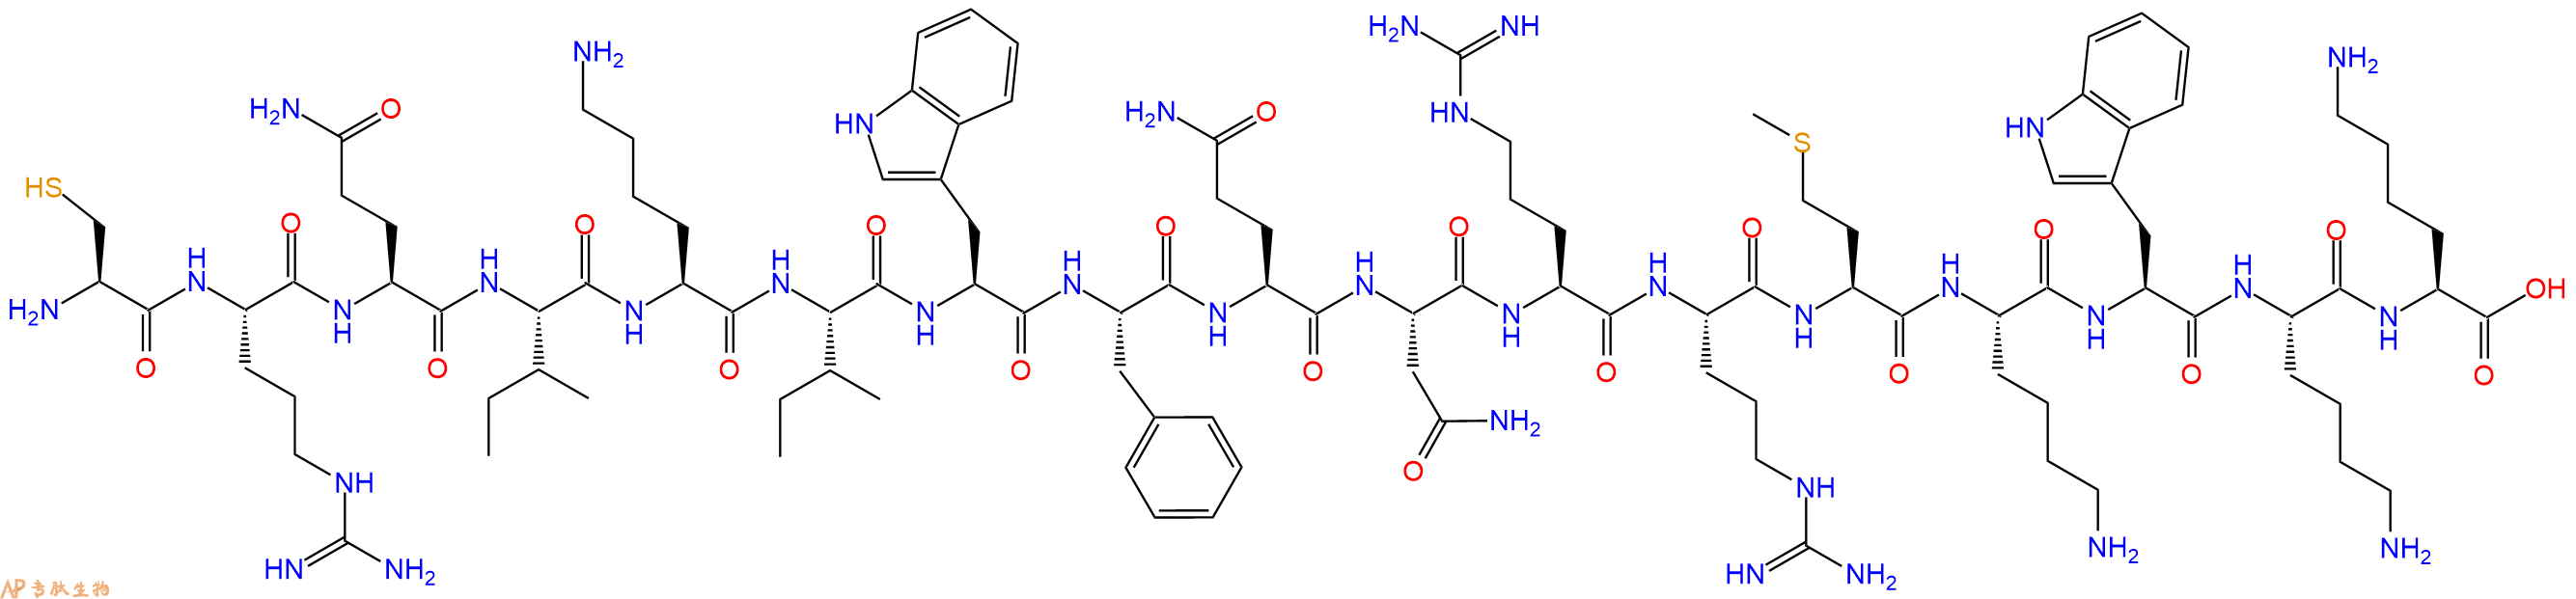 专肽生物产品H2N-Cys-Arg-Gln-Ile-Lys-Ile-Trp-Phe-Gln-Asn-Arg-Arg-Met-Lys-Trp-Lys-Lys-COOH